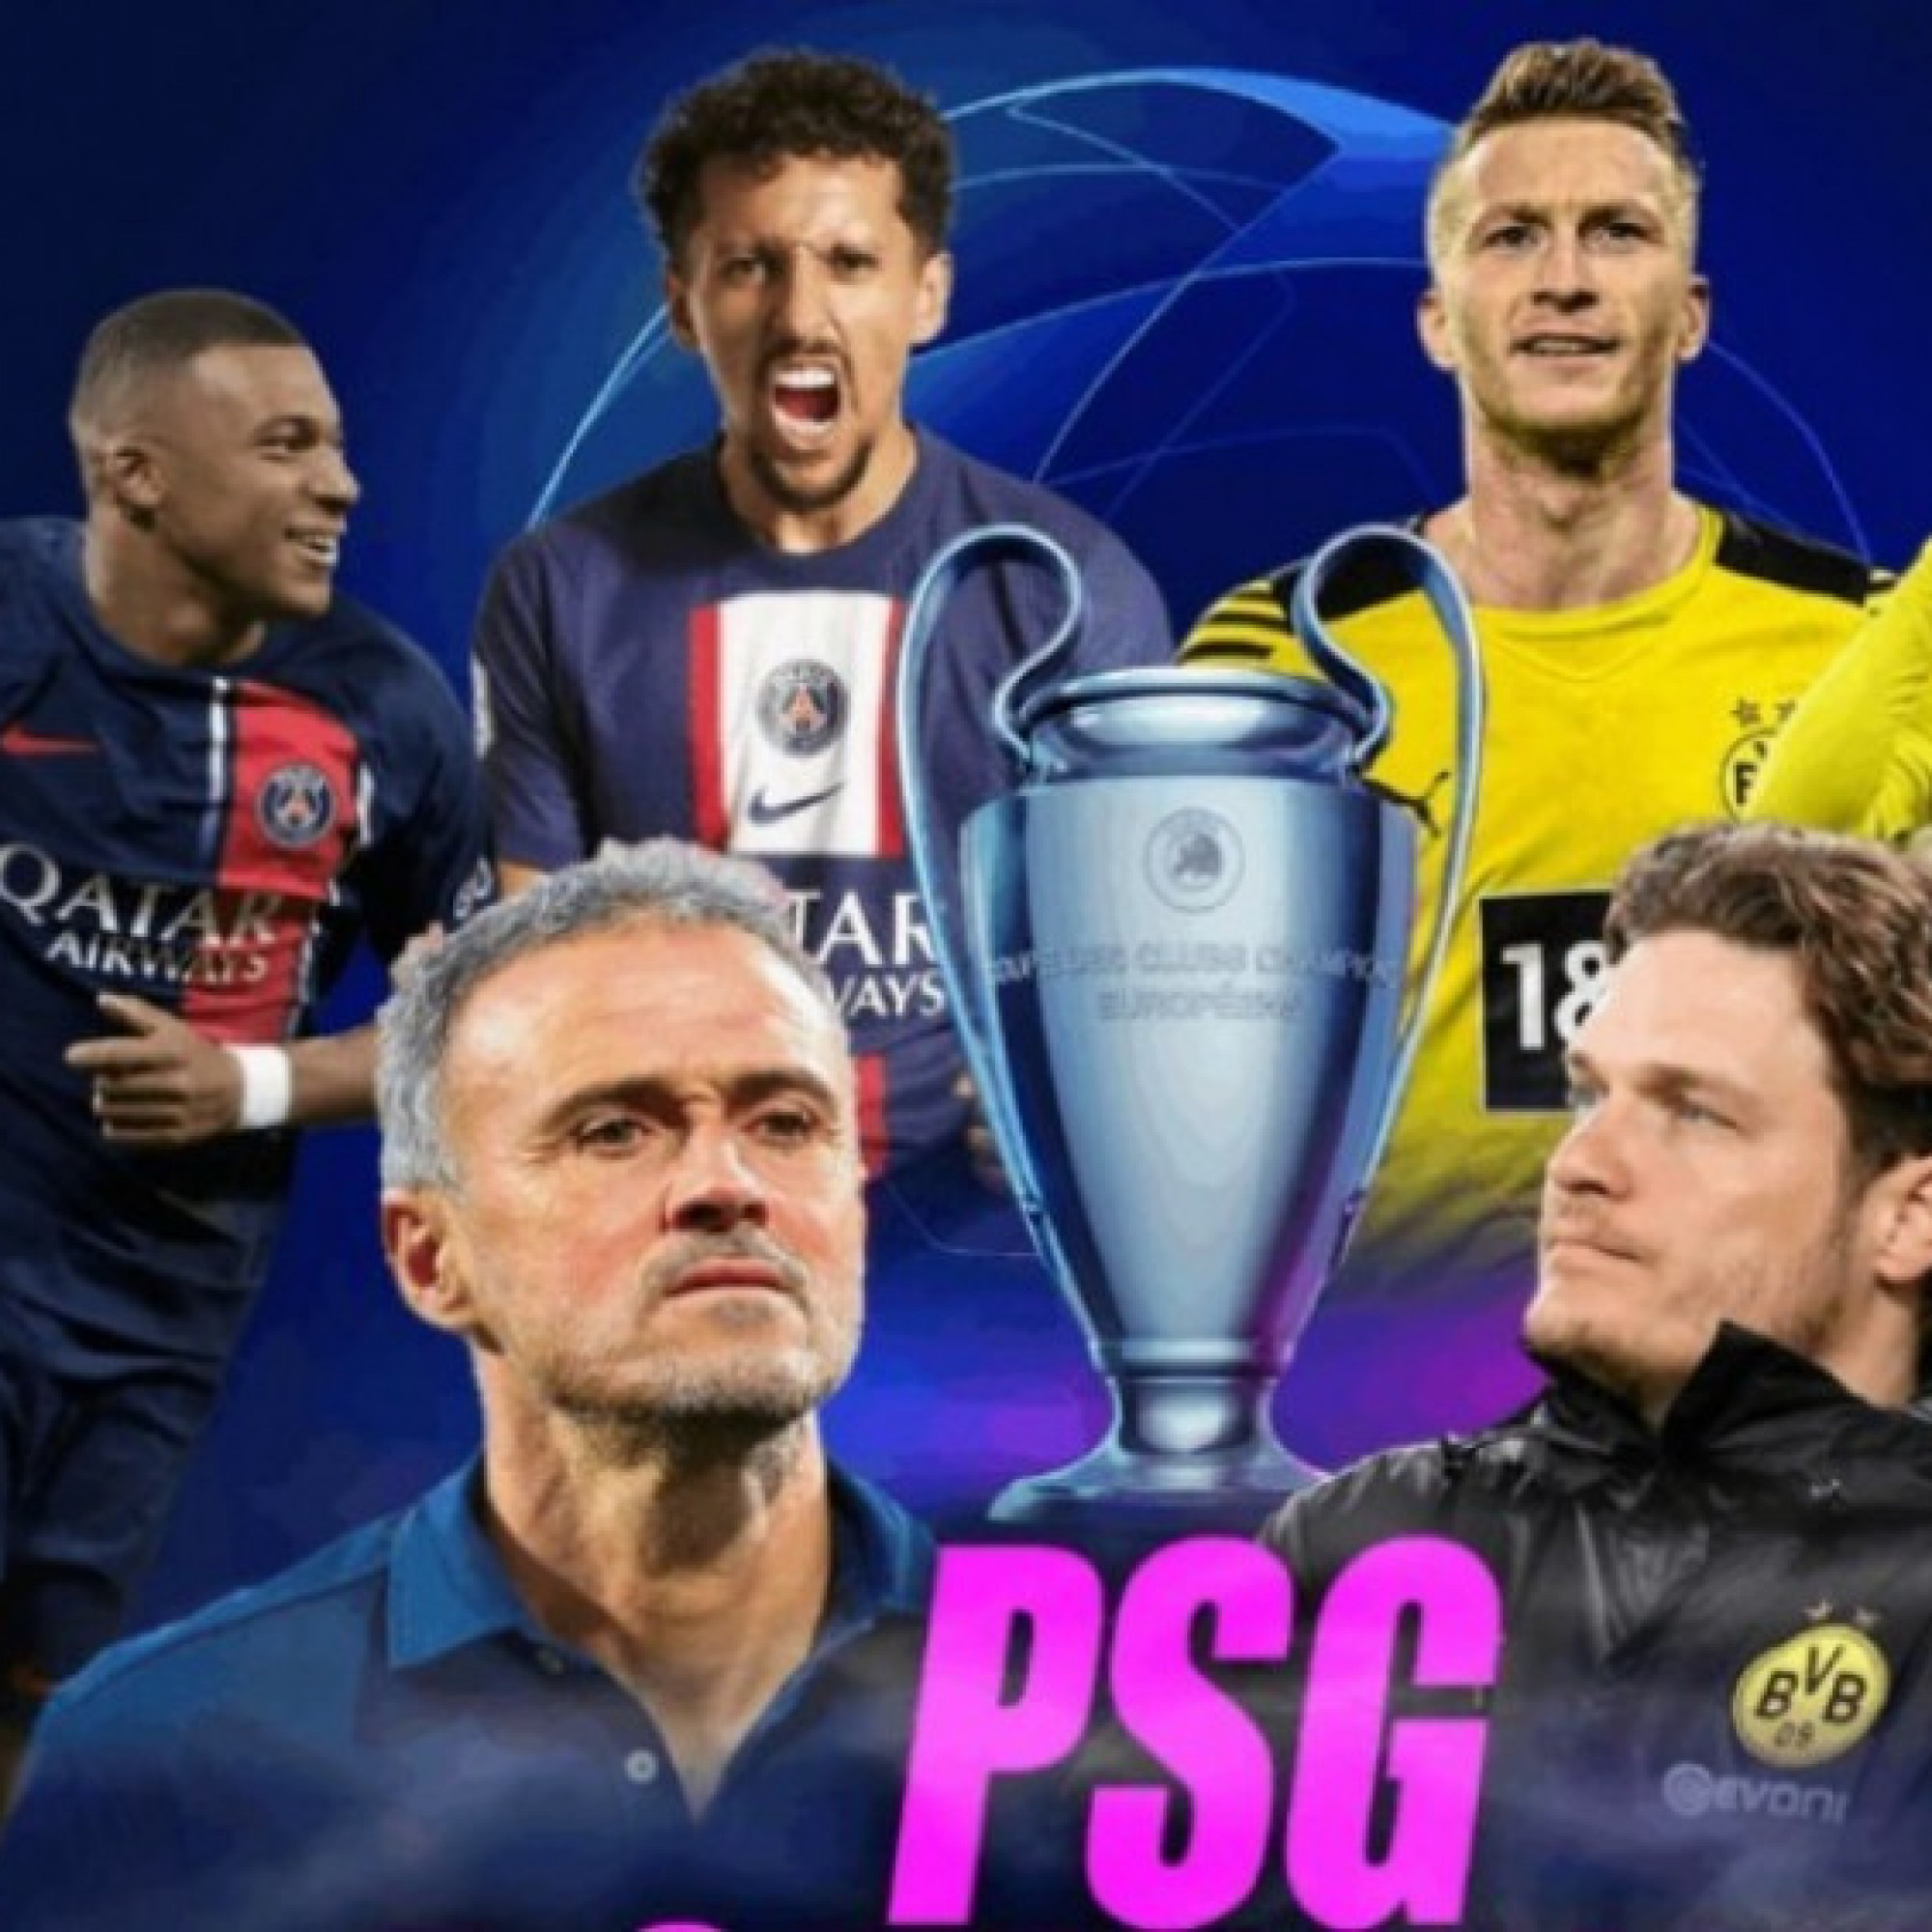  - Lịch trực tiếp bóng đá và link xem trực tiếp hôm nay: PSG đấu Dortmund xem kênh nào?